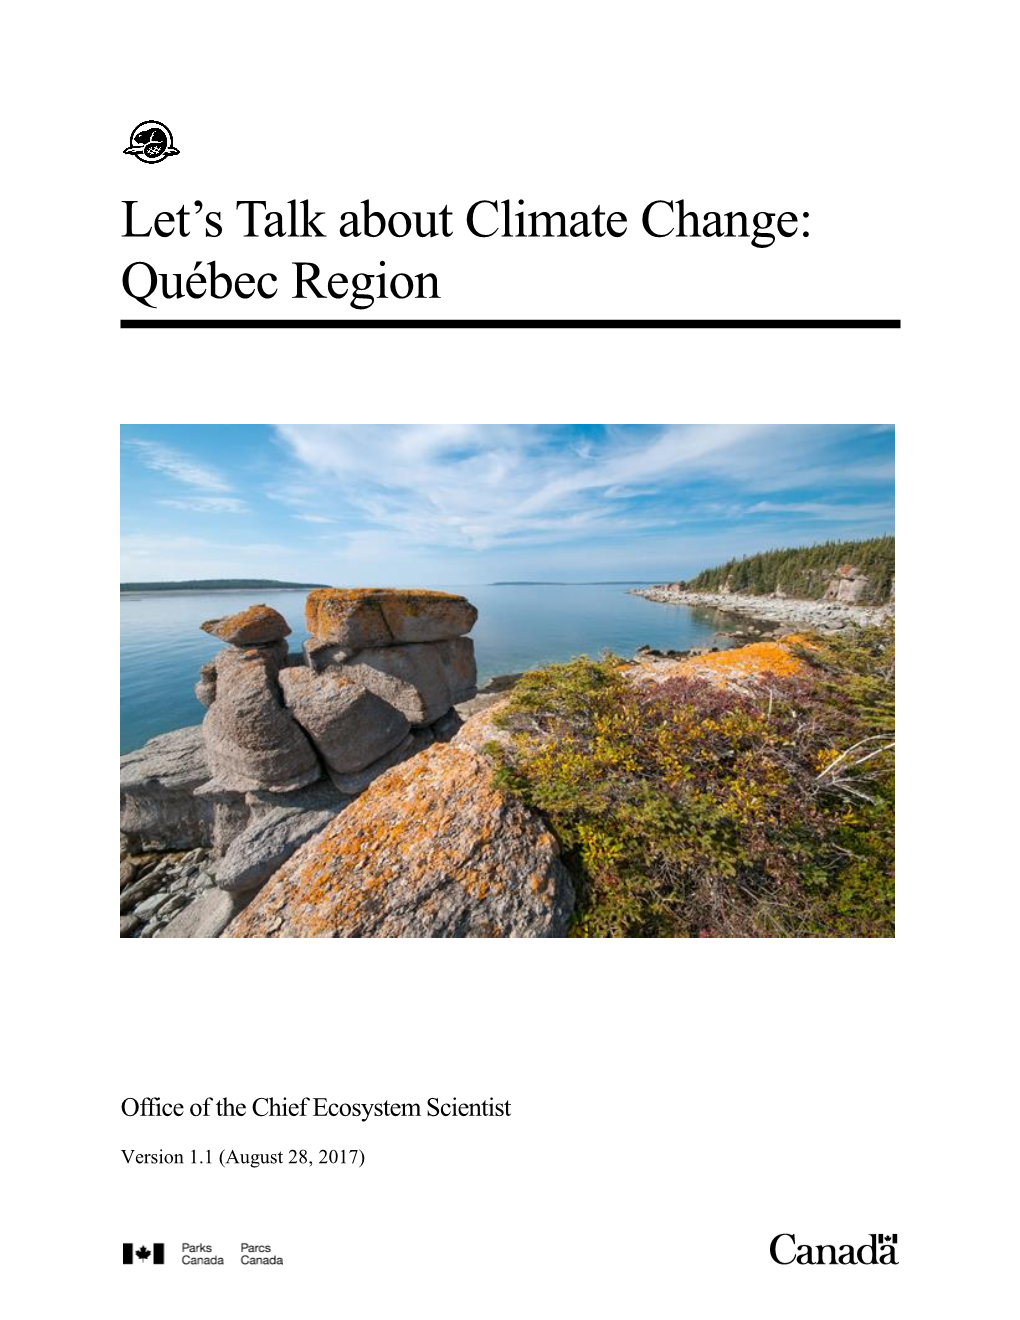 Let's Talk About Climate Change: Québec Region